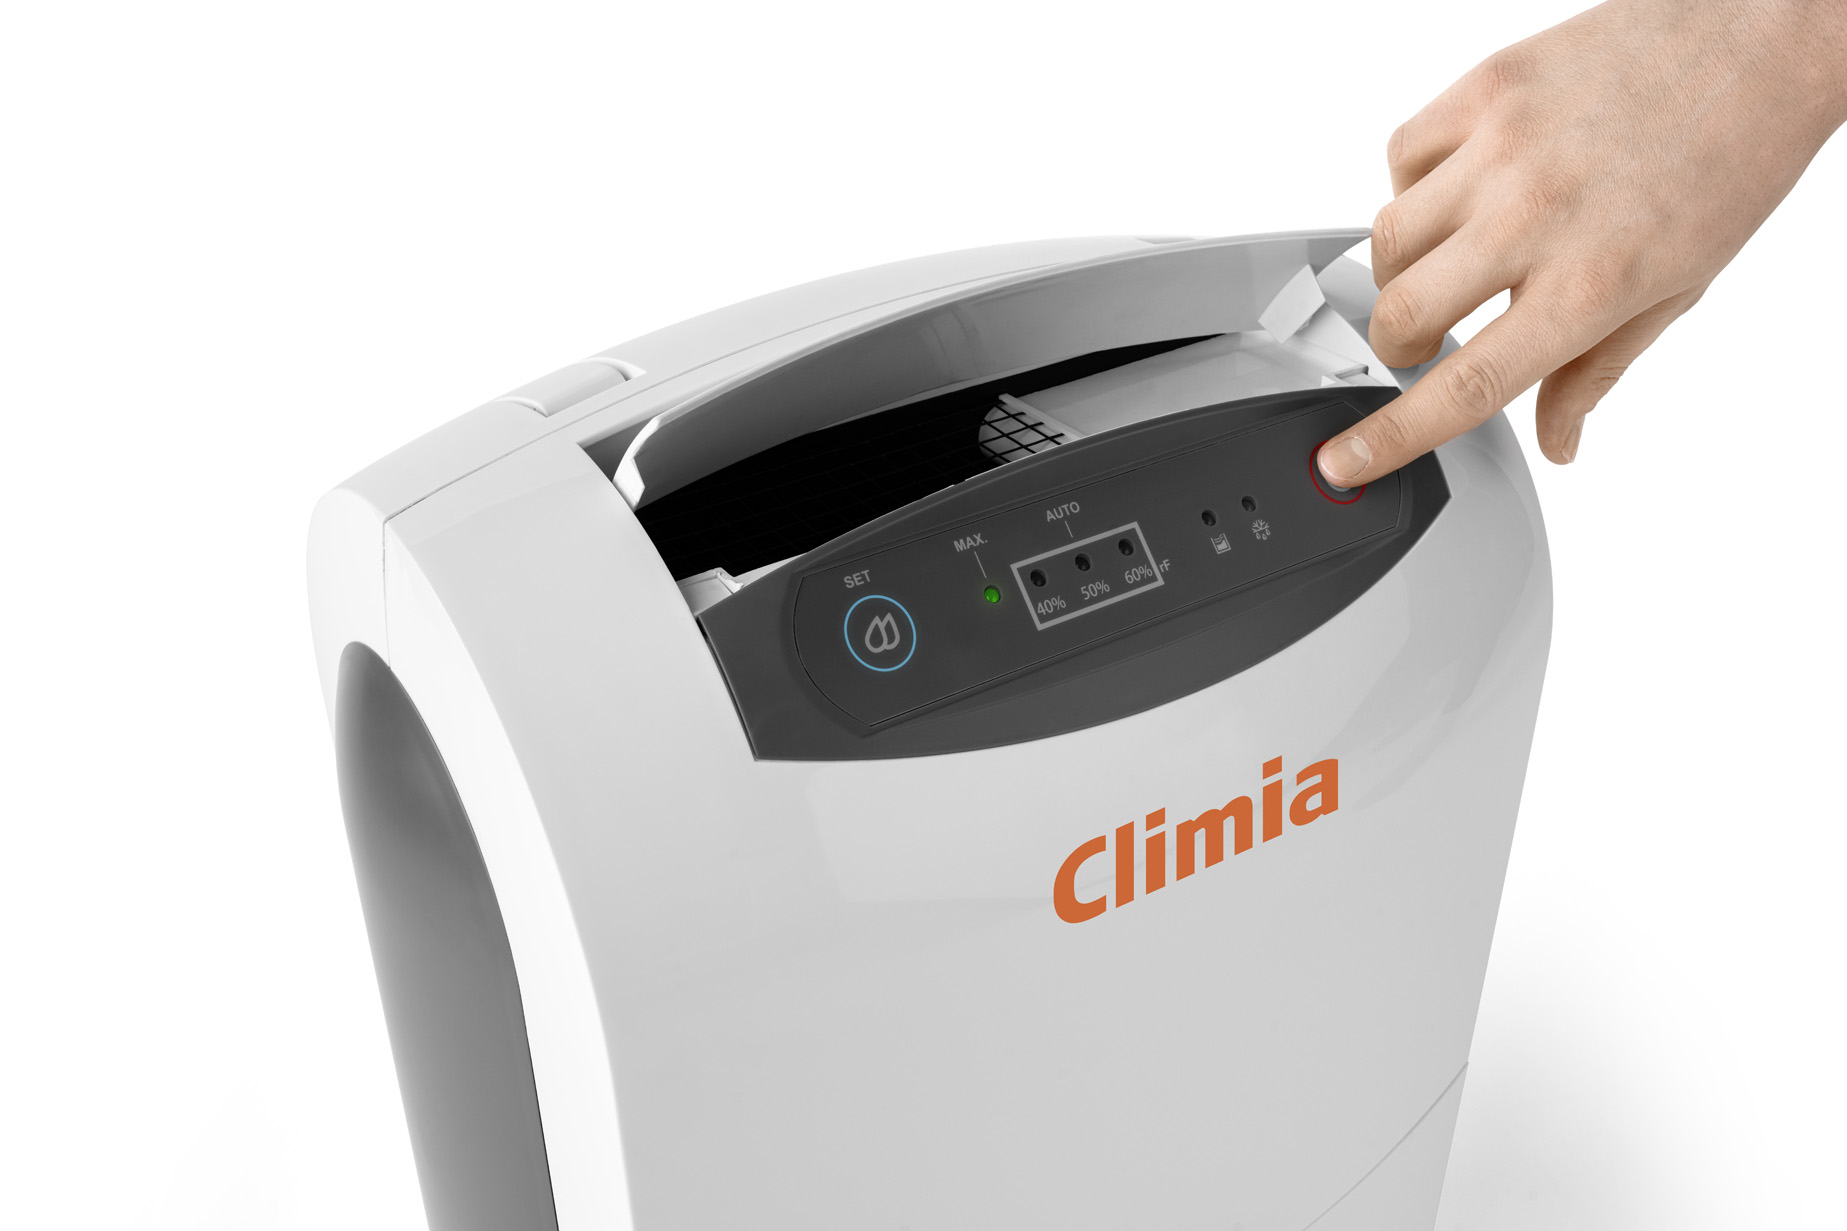 Climia CTK 190 ECO Luftentfeuchter mit R290 - Hilfe bei akuten Notfällen wie Wasserschäden oder Schimmelpilzbefall